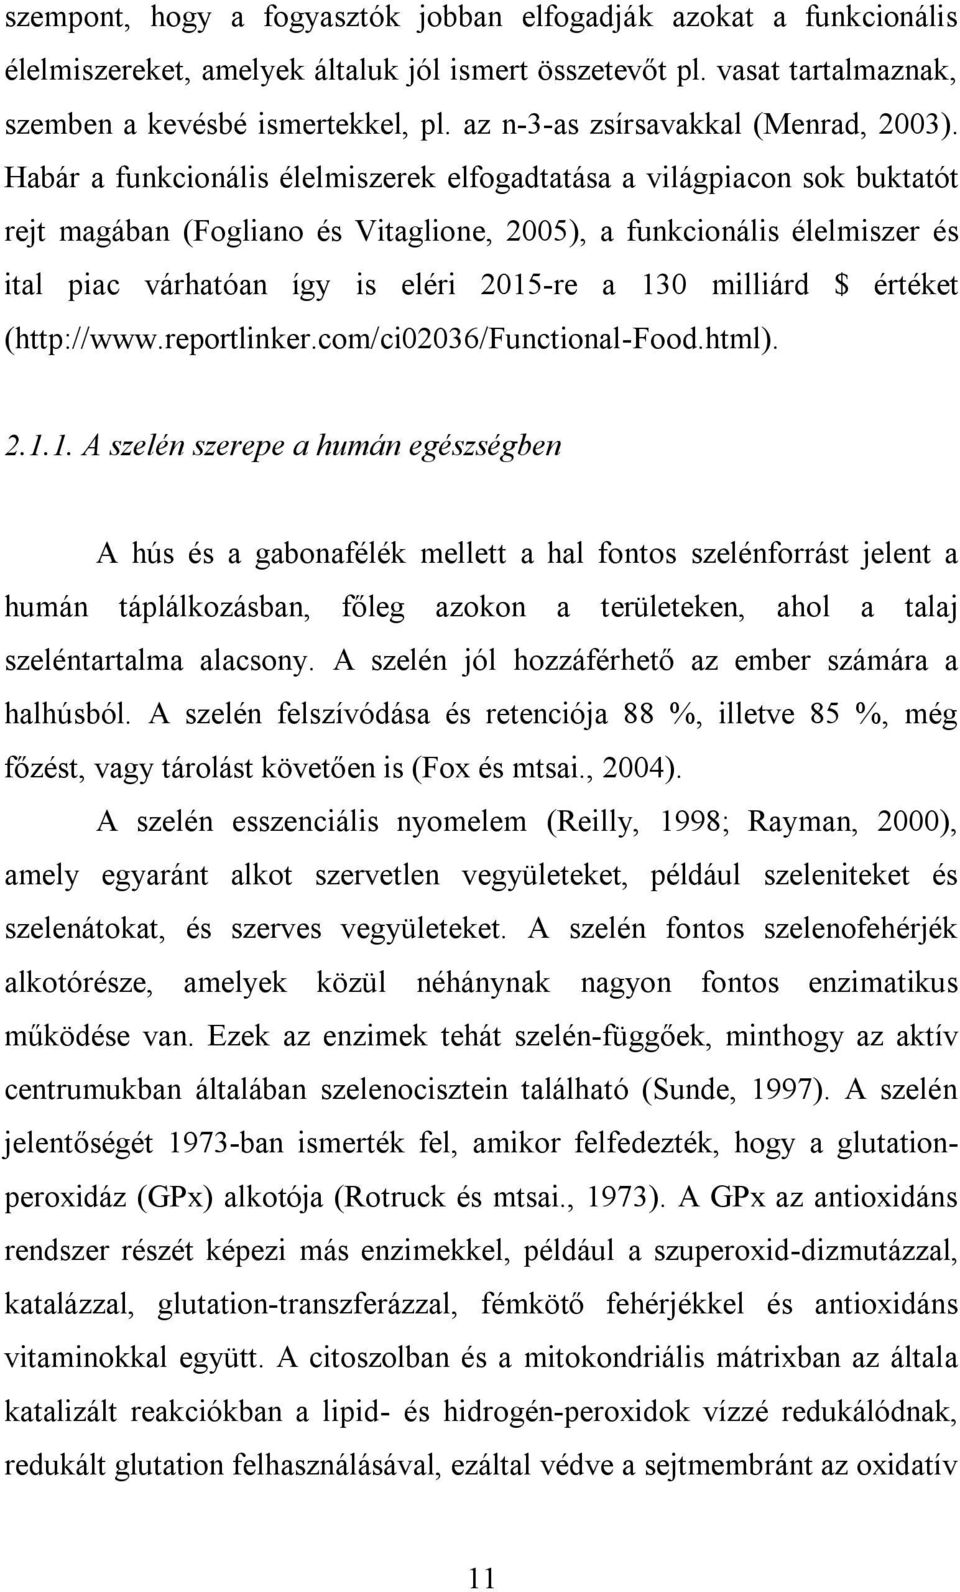 Habár a funkcionális élelmiszerek elfogadtatása a világpiacon sok buktatót rejt magában (Fogliano és Vitaglione, 2005), a funkcionális élelmiszer és ital piac várhatóan így is eléri 2015-re a 130